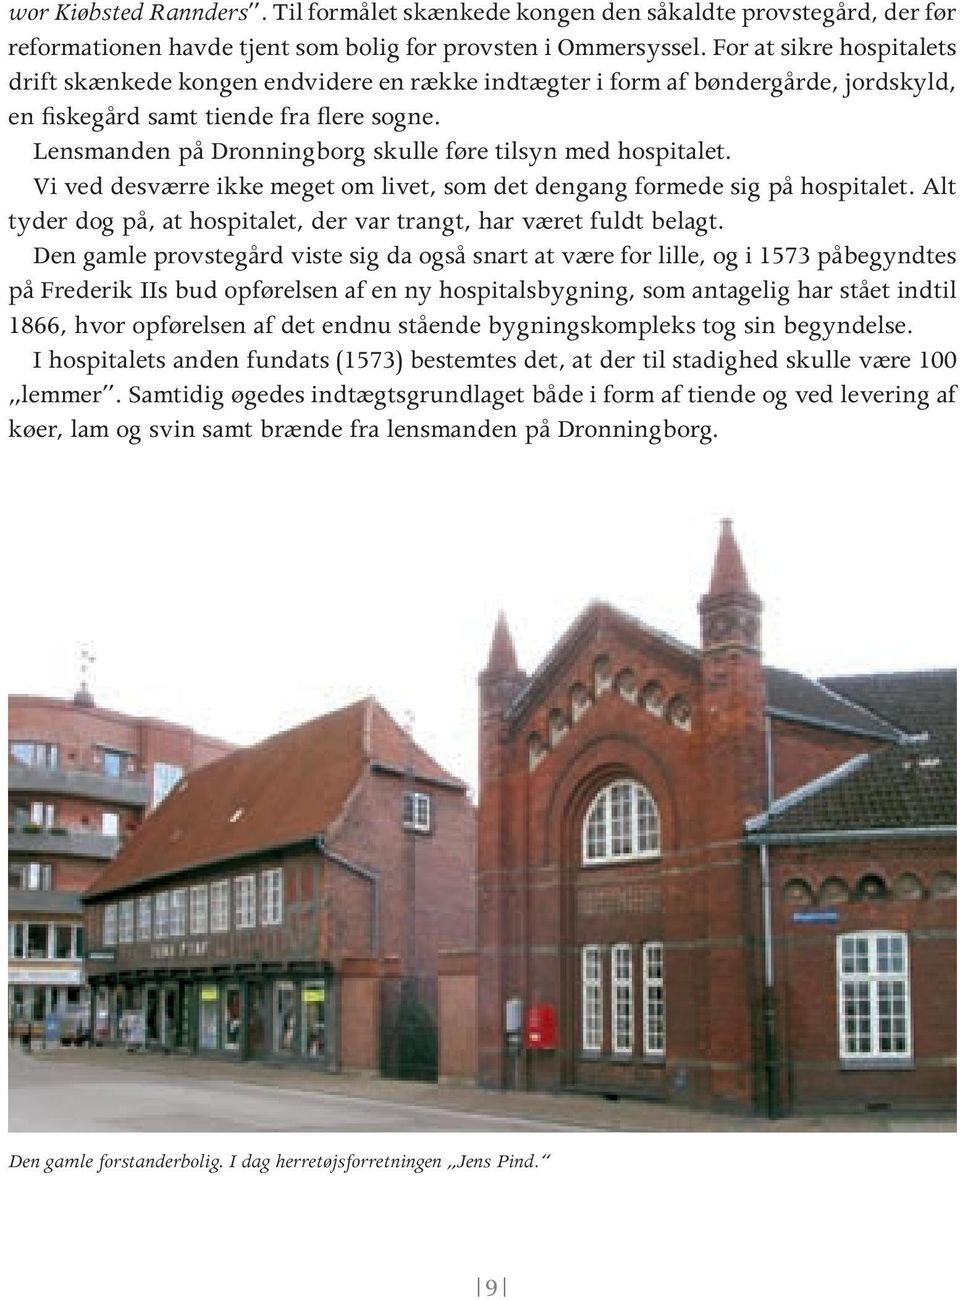 Lensmanden på Dronningborg skulle føre tilsyn med hospitalet. Vi ved desværre ikke meget om livet, som det dengang formede sig på hospitalet.